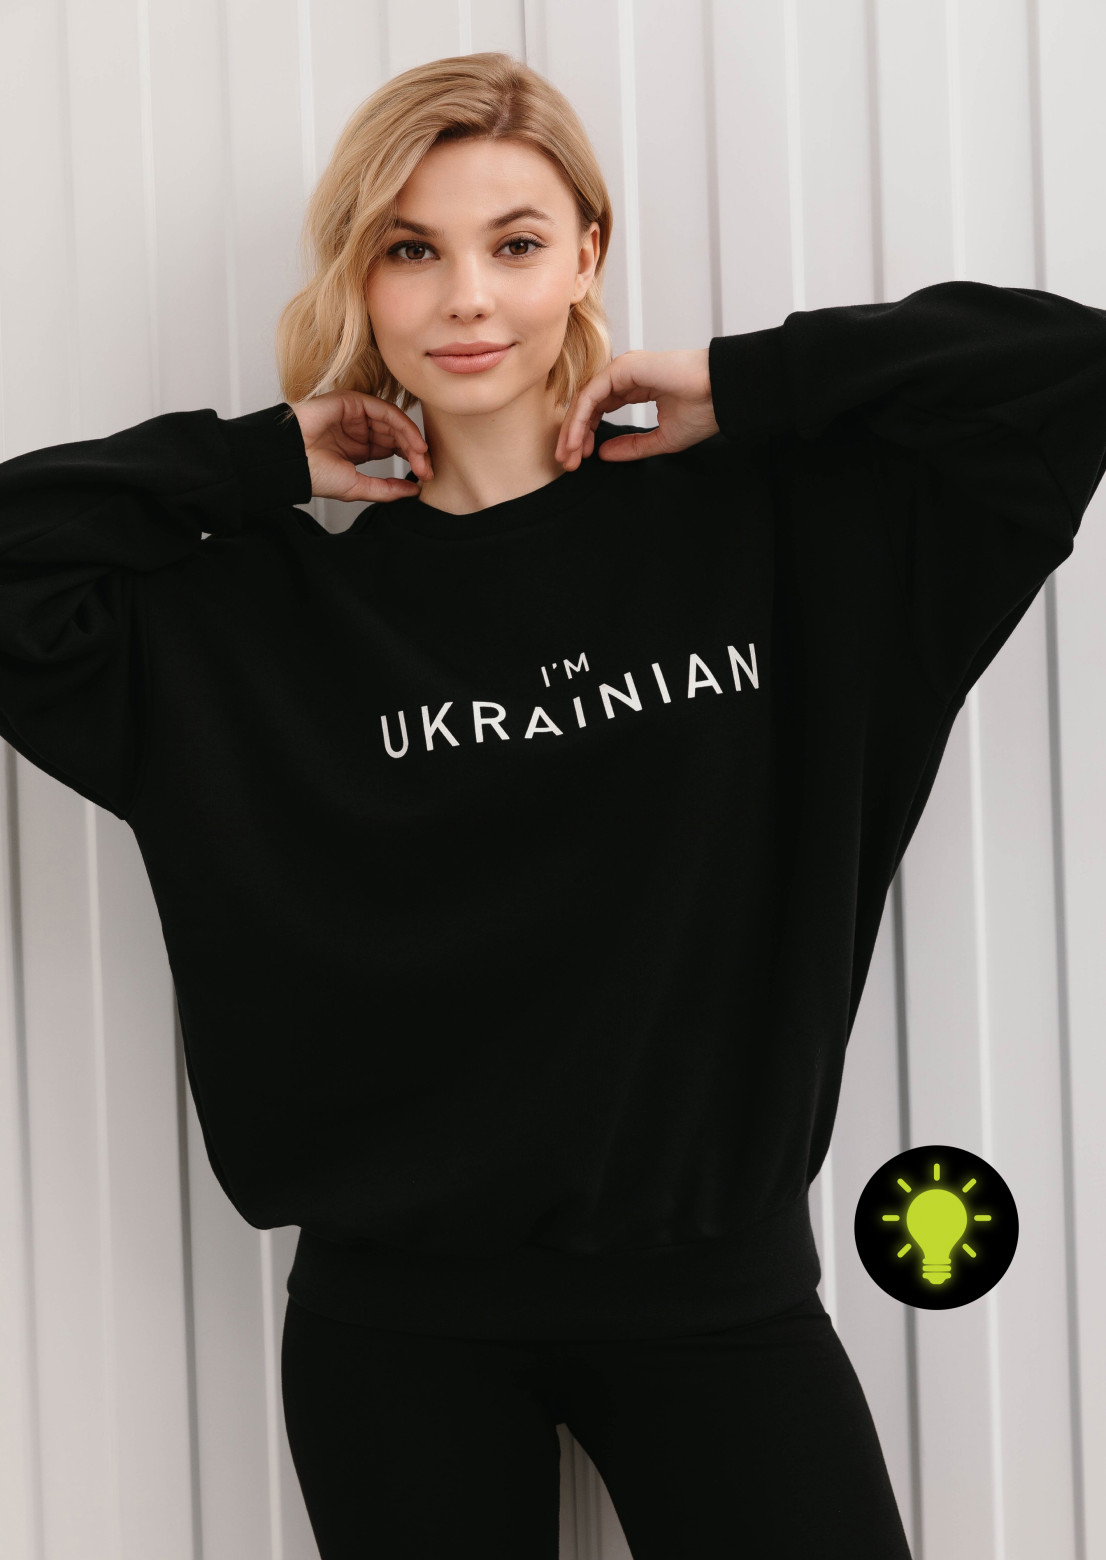 Dark night sweatshirt with lume print "I'm Ukrainian"